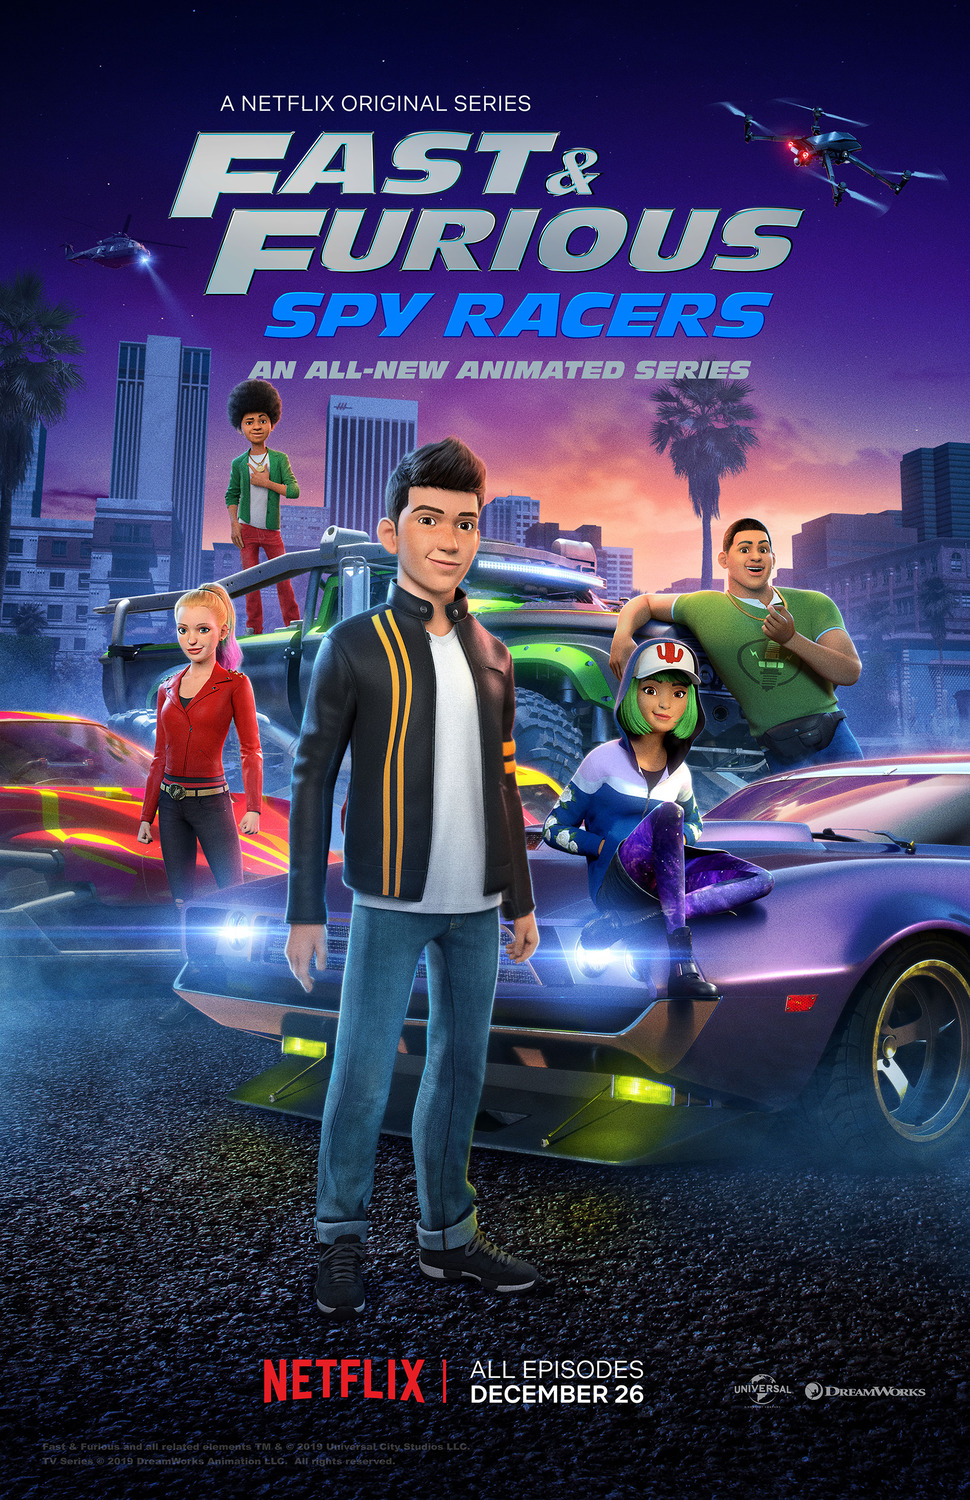 ดูหนังออนไลน์ฟรี Fast & Furious Spy Racers (2019) Season1 EP2 เร็ว…แรง ทะลุนรก ซิ่งสยบโลก ตอนที่ 2 (พากย์ไทย)